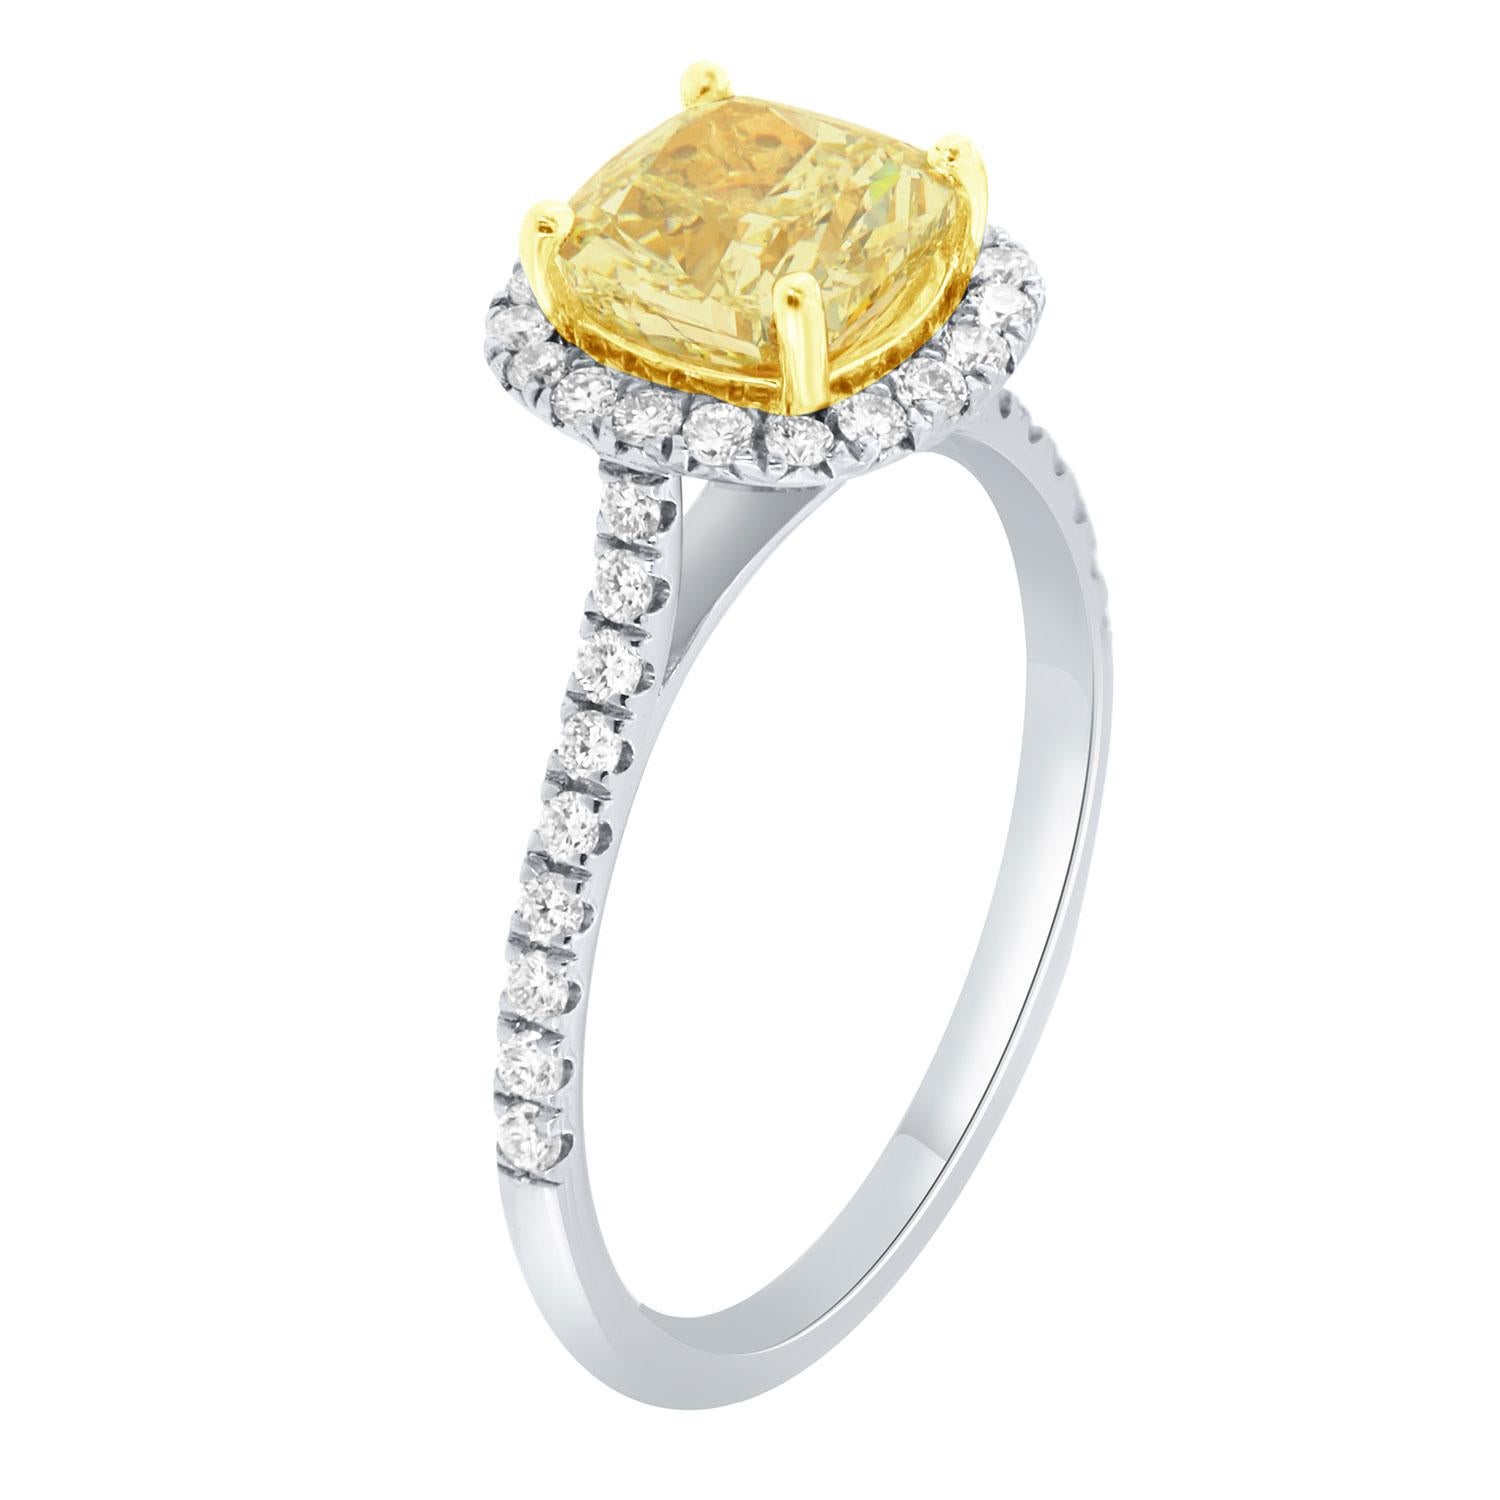 Cette bague en or blanc et jaune 18 carats est ornée d'un diamant jaune de 1,95 carat en forme de coussin. Un halo de diamants ronds brillants entoure le diamant central. L'anneau mesure 1,6 mm de large et contient une rangée de diamants sertis en